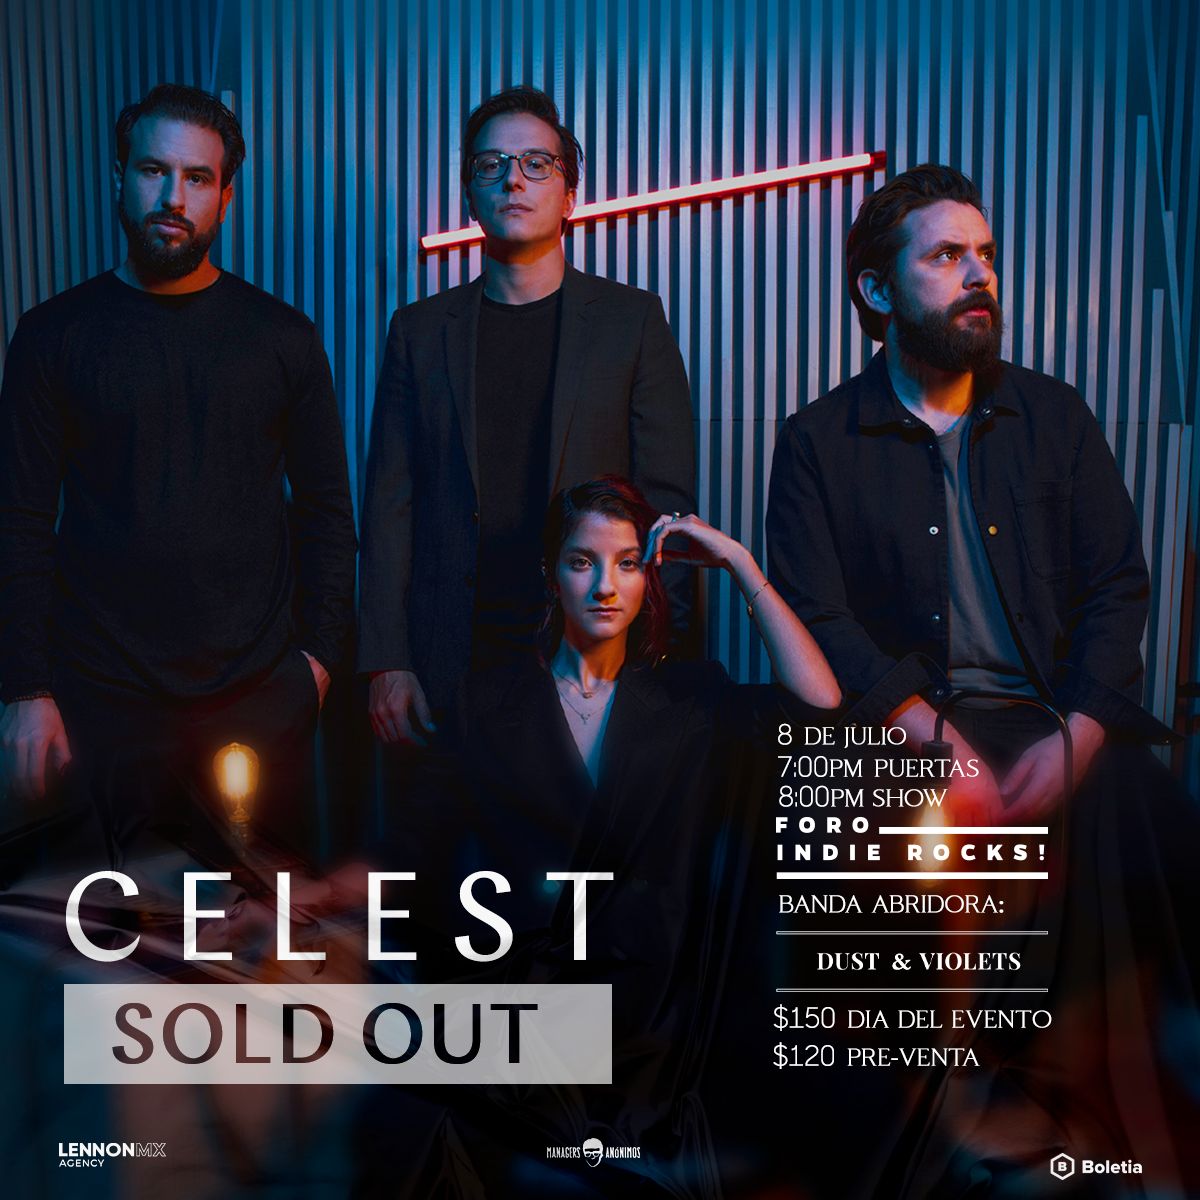 Celest redes soldout.